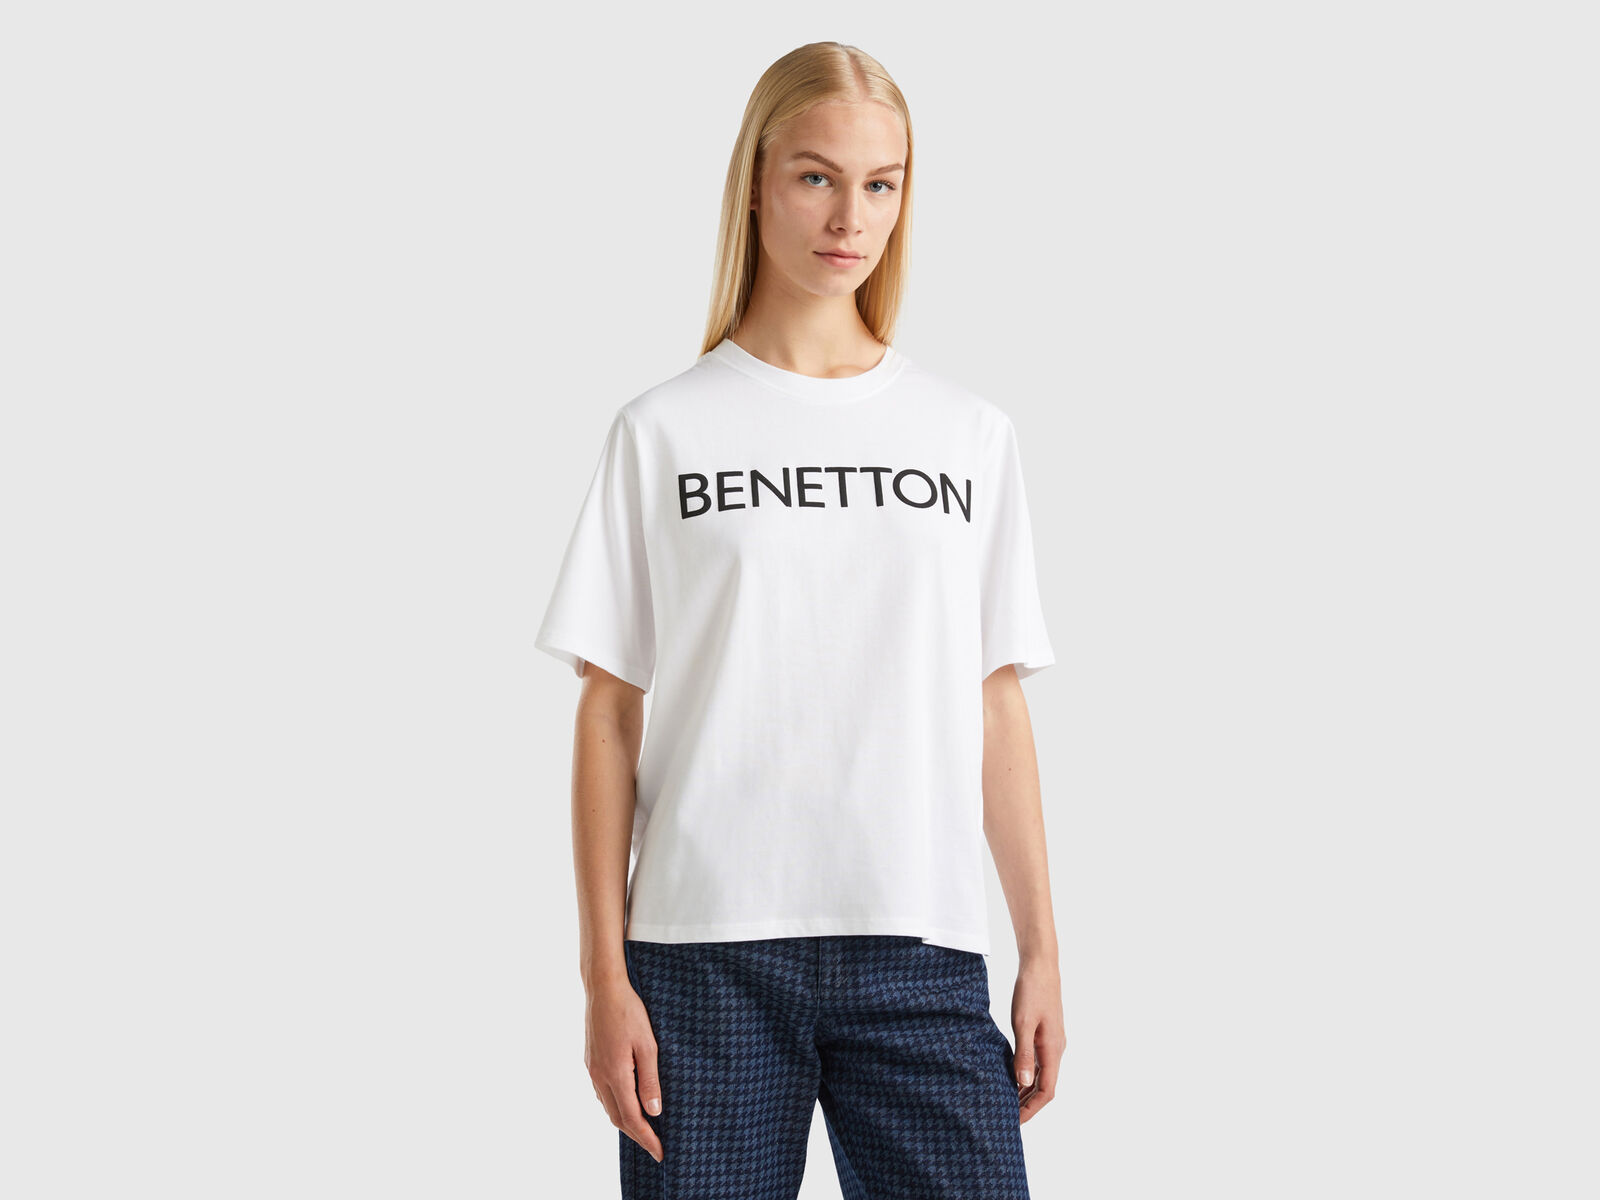 Benetton | - T-shirt with logo White text